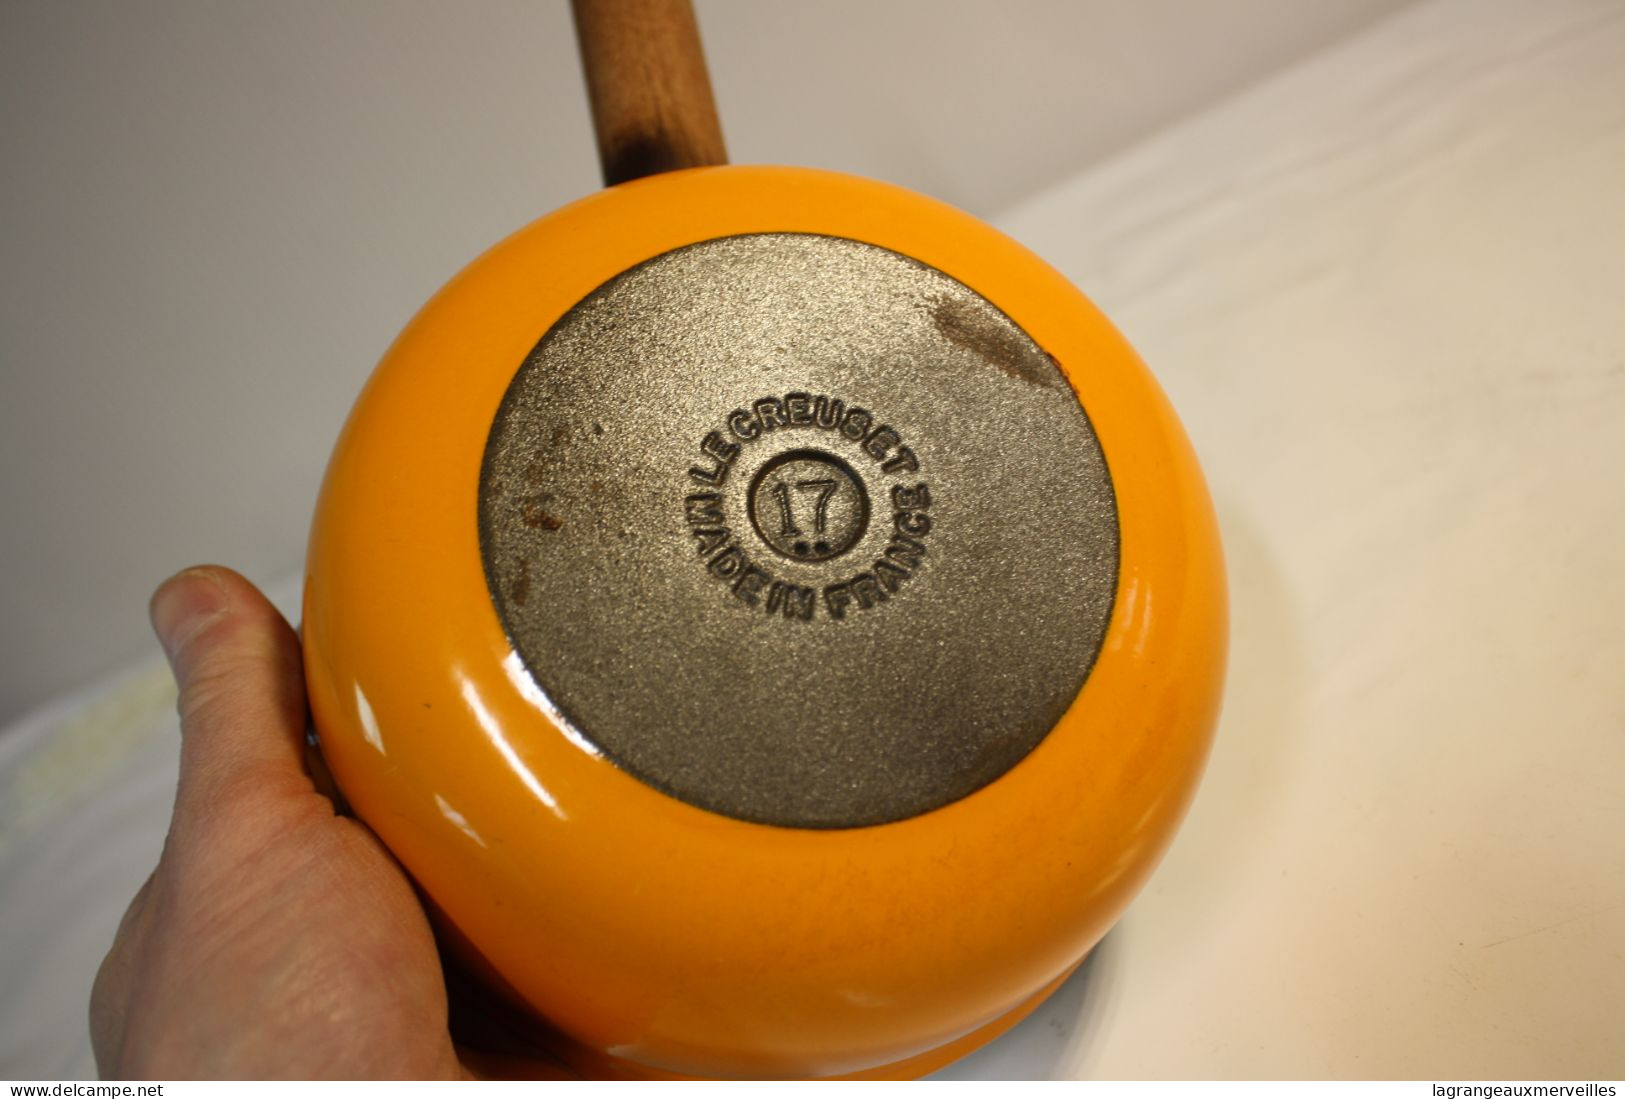 E2 Ancienne poele - Le Creuset 17 - orange - vintage